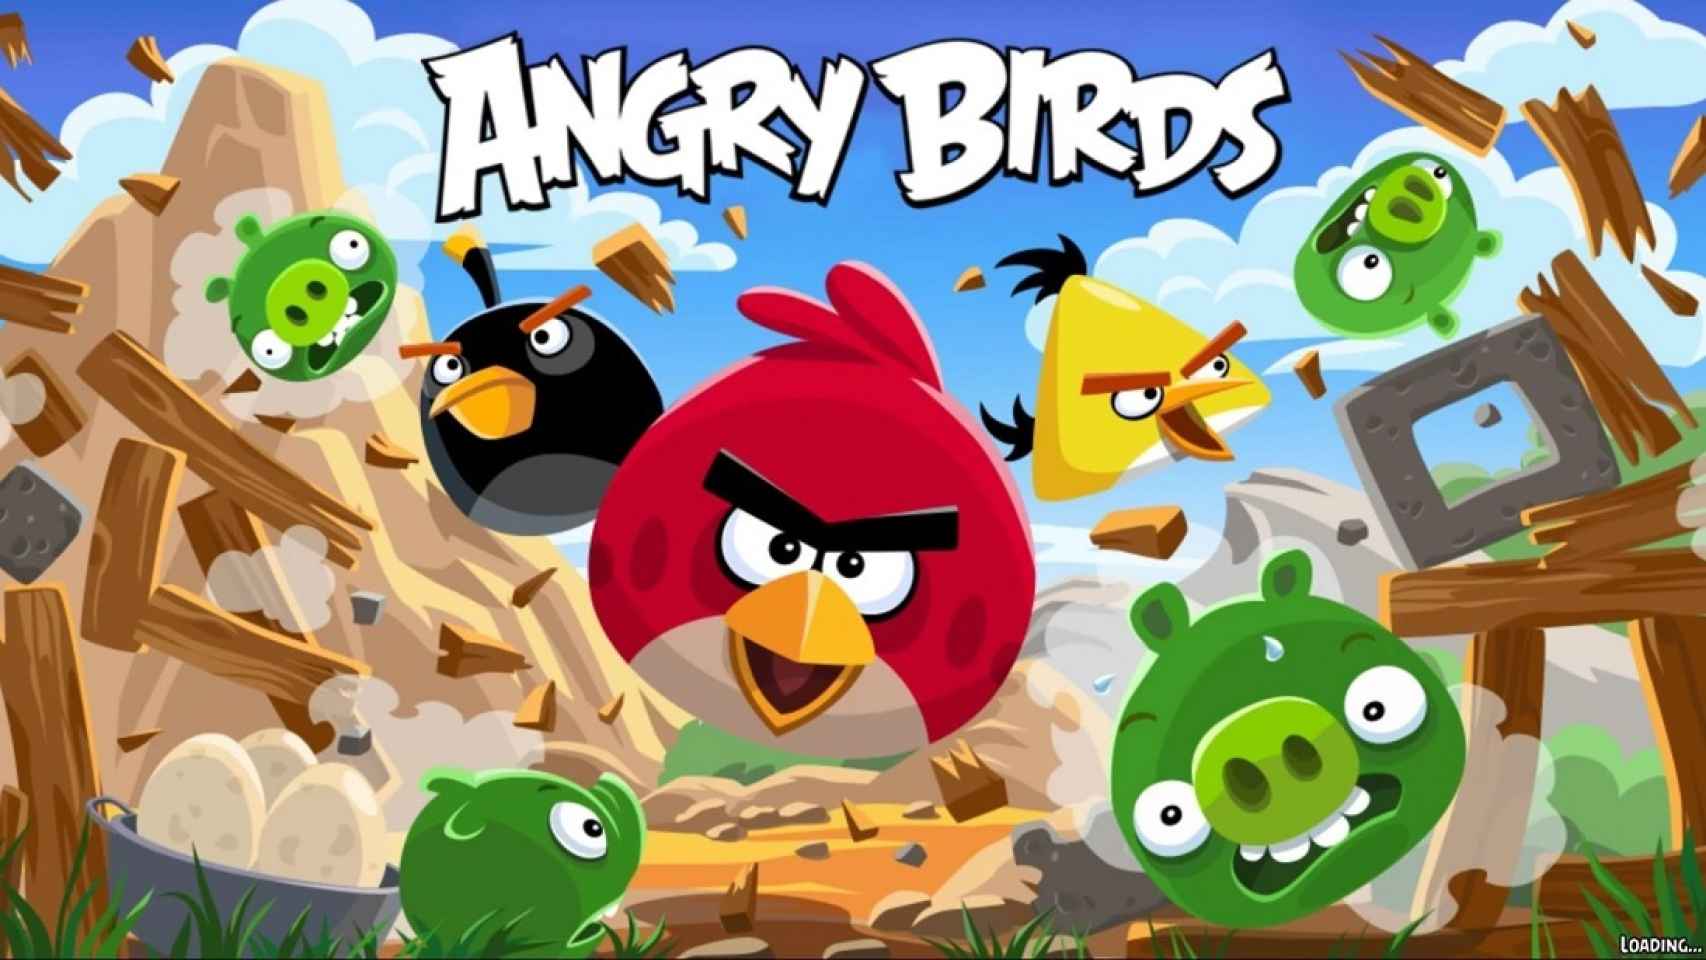 Angry Birds cumple 10 años: Cómo ha evolucionado en estos años